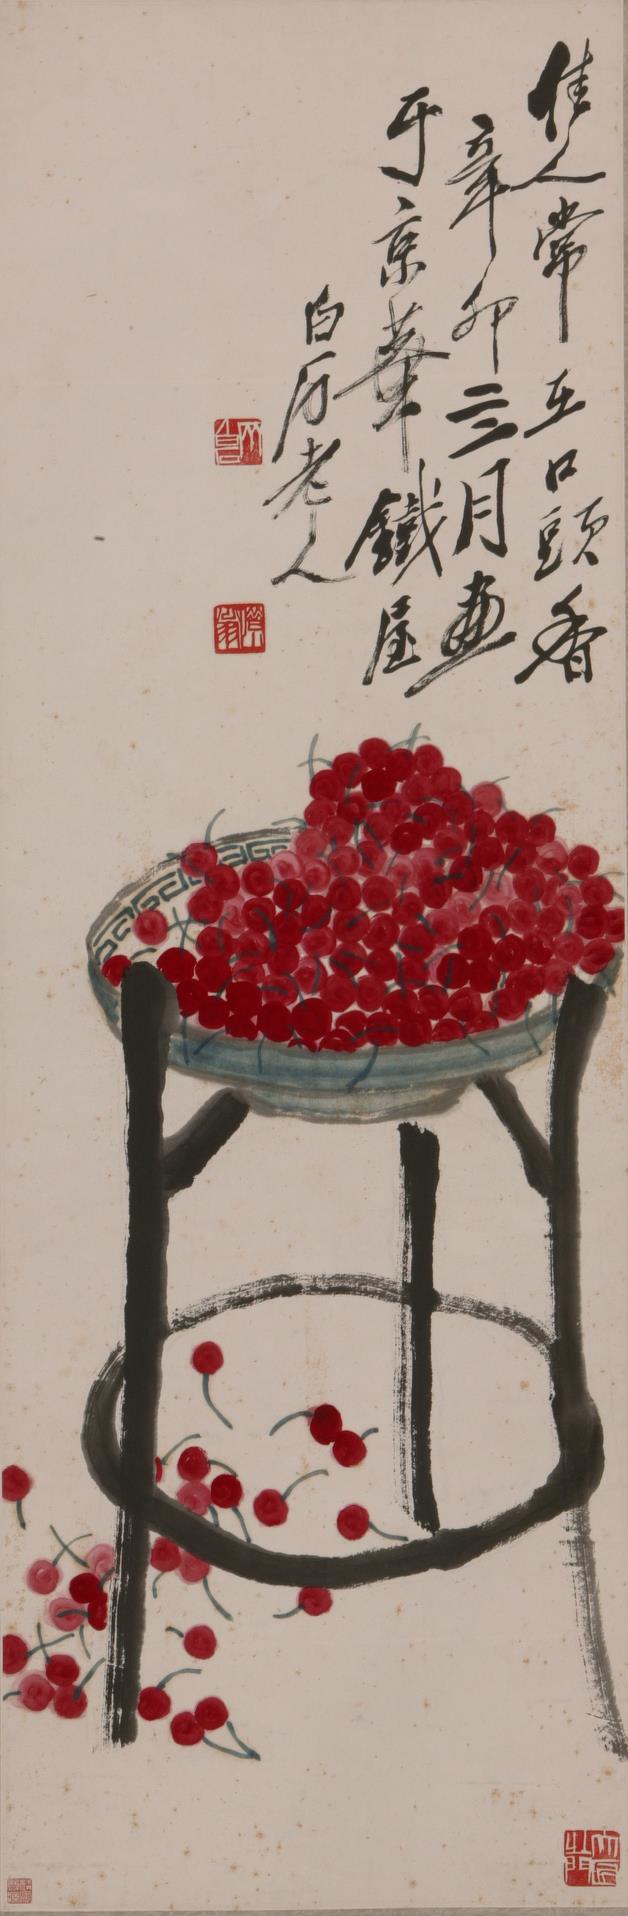 《樱桃》作者：齐白石创作年代：1951年规格：102.8×34cm品类：中国画